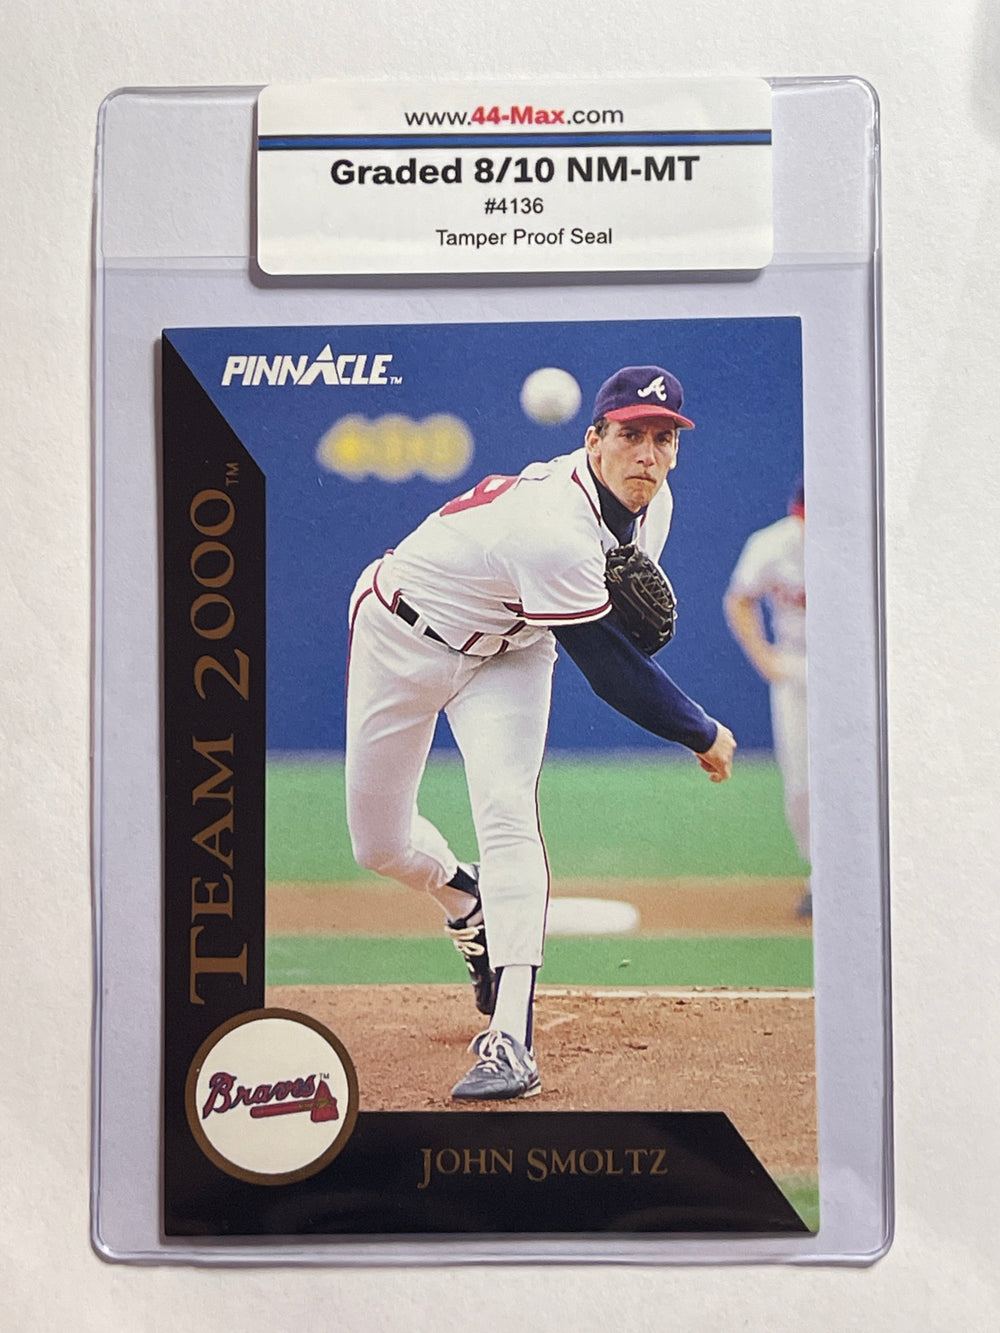 John Smoltz Team2000 1992 Pinnacle Baseball Card. 44-Max 8/10 NM-MT #4136